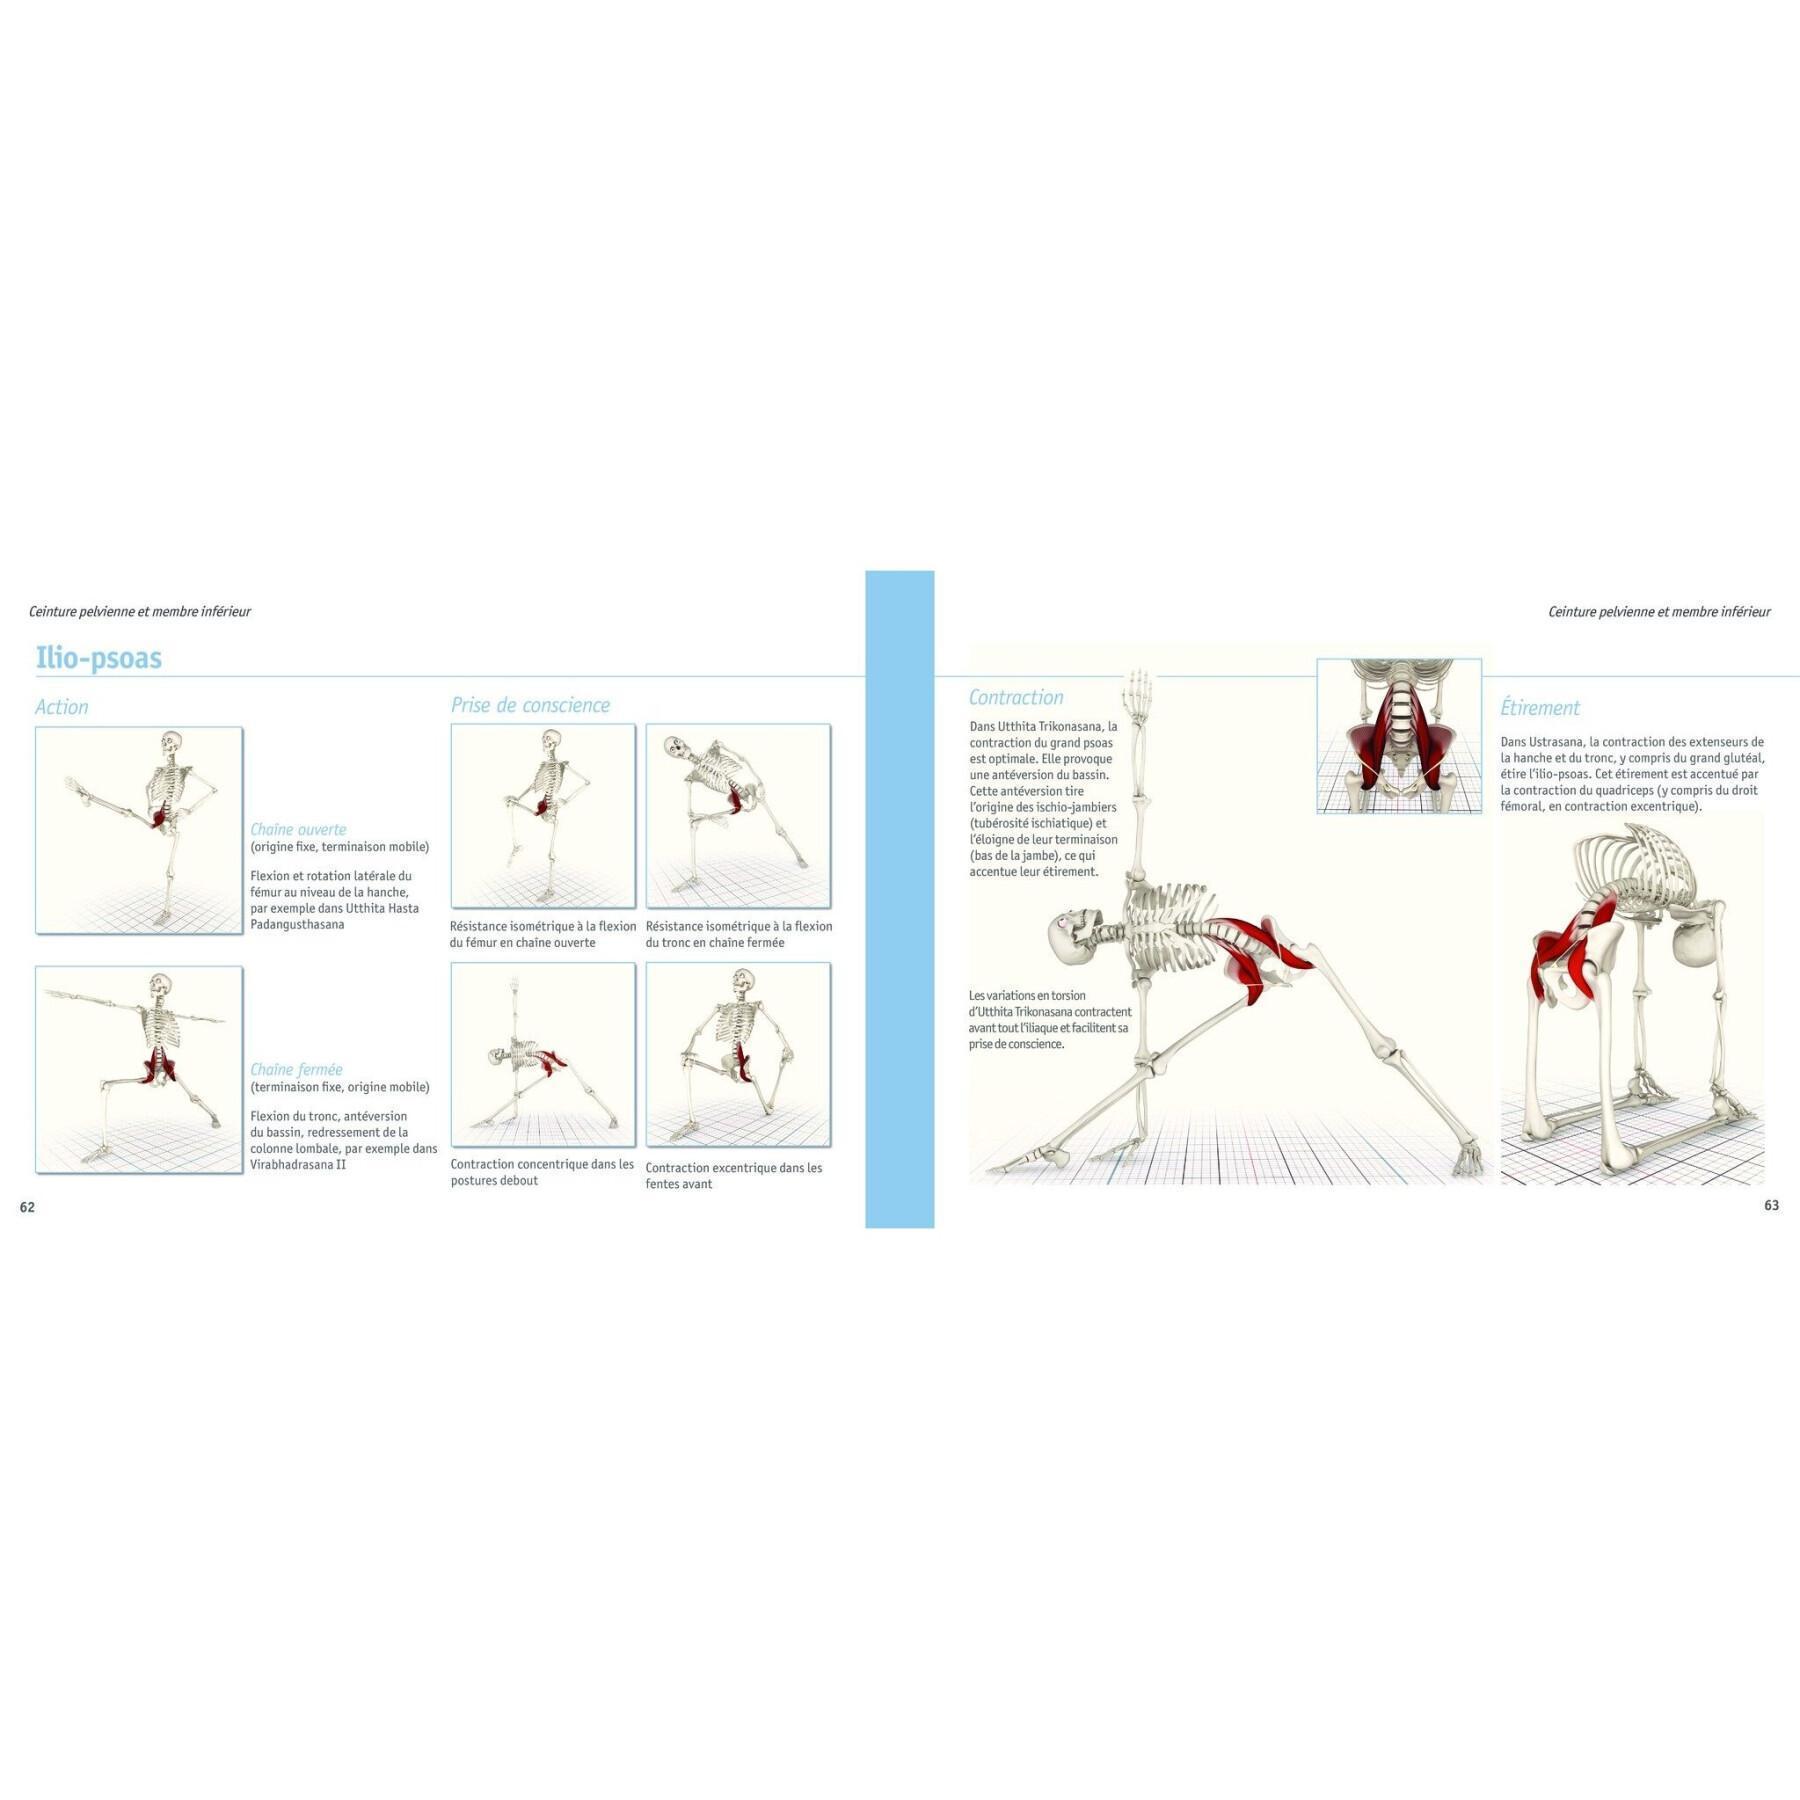 Libro anatomía-músculos del yoga Hachette